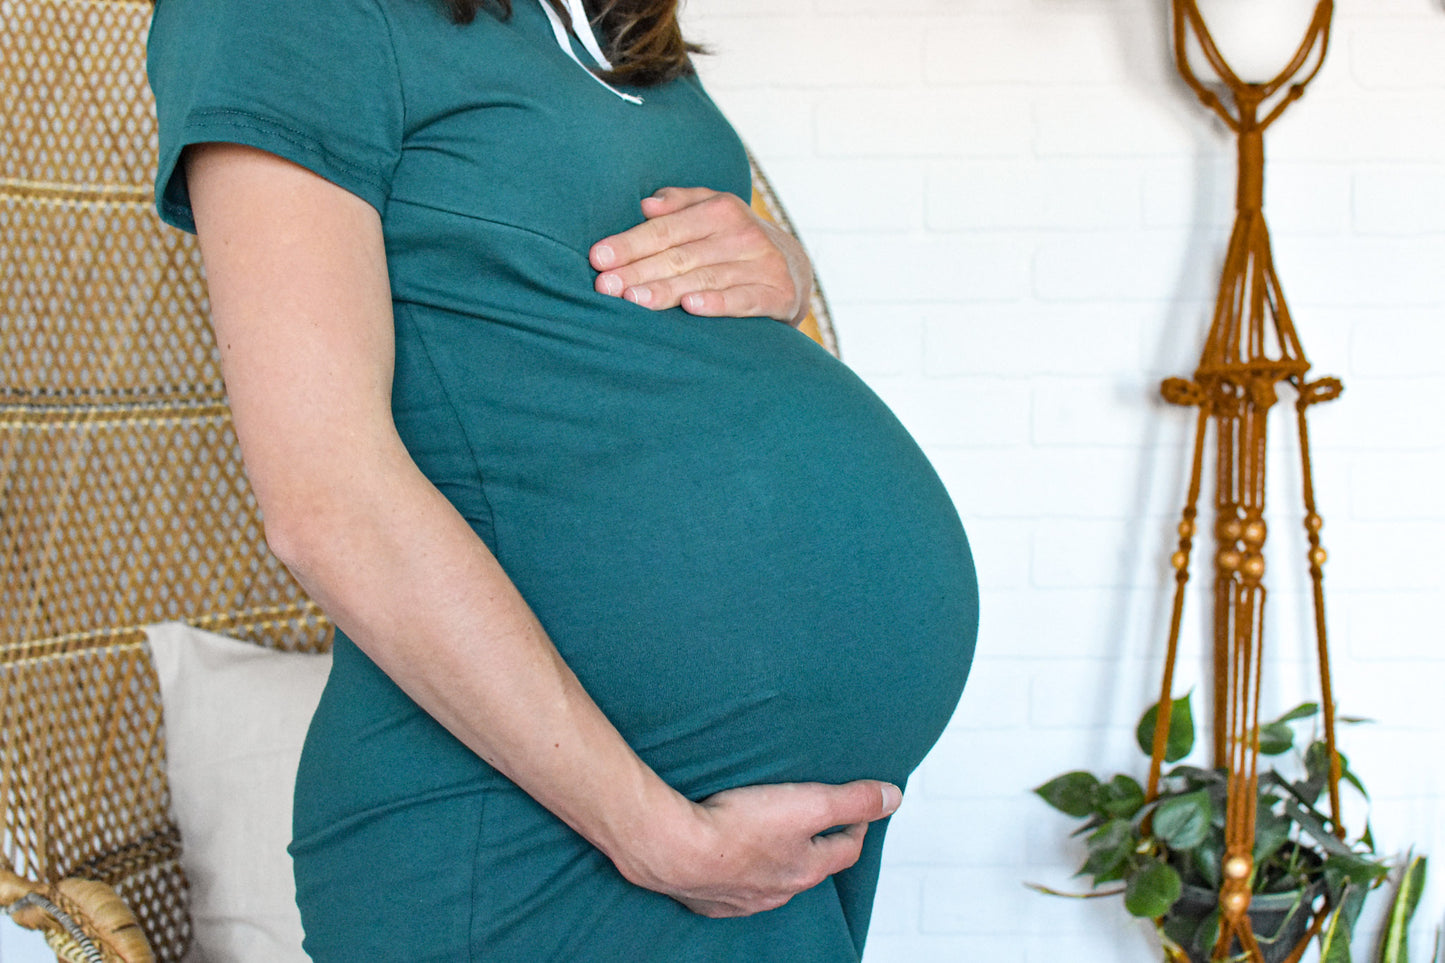 Femme enceinte Robe à capuchon vert bleu sarcelle 3 en 1 maternité. allaitement et post partum Nine Clothing